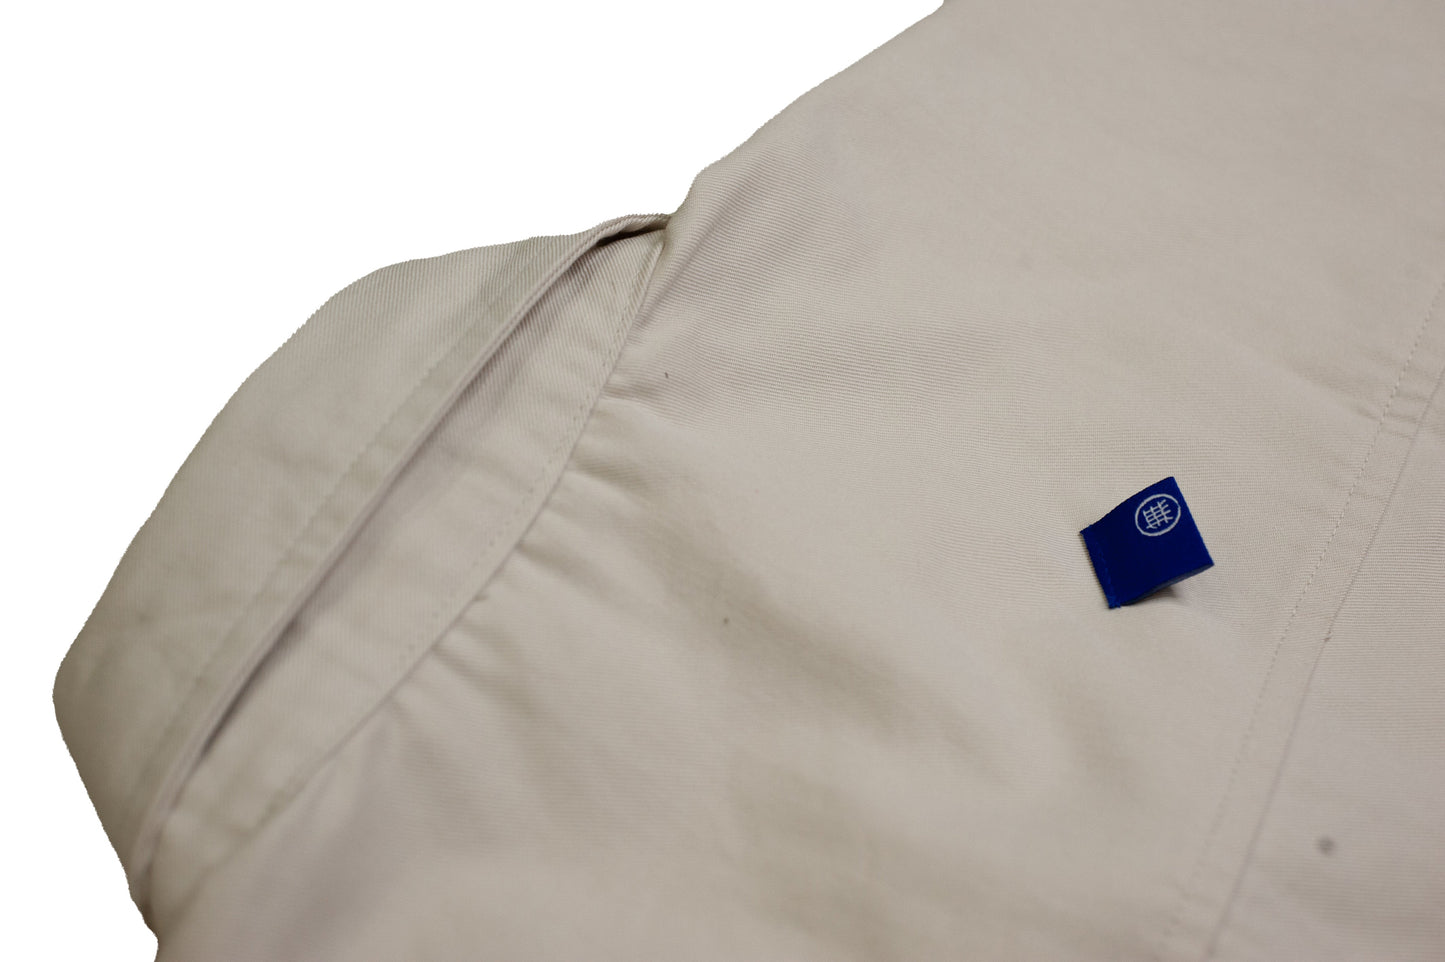 Null Label Oversized Button Shirt in Blueish Grey Denim